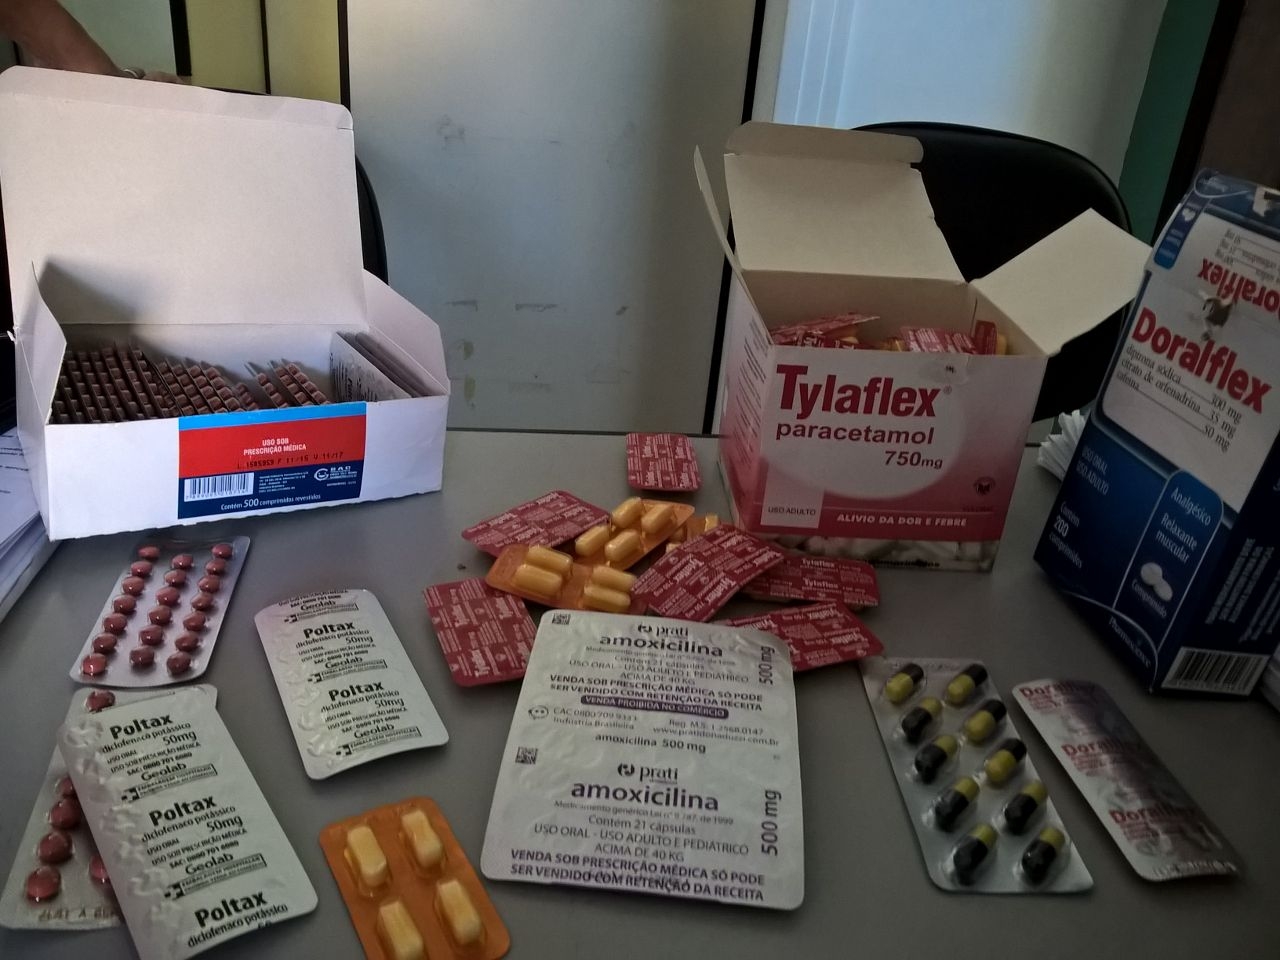 Operação apreende remédios vendidos sem autorização em bairro de Salvador